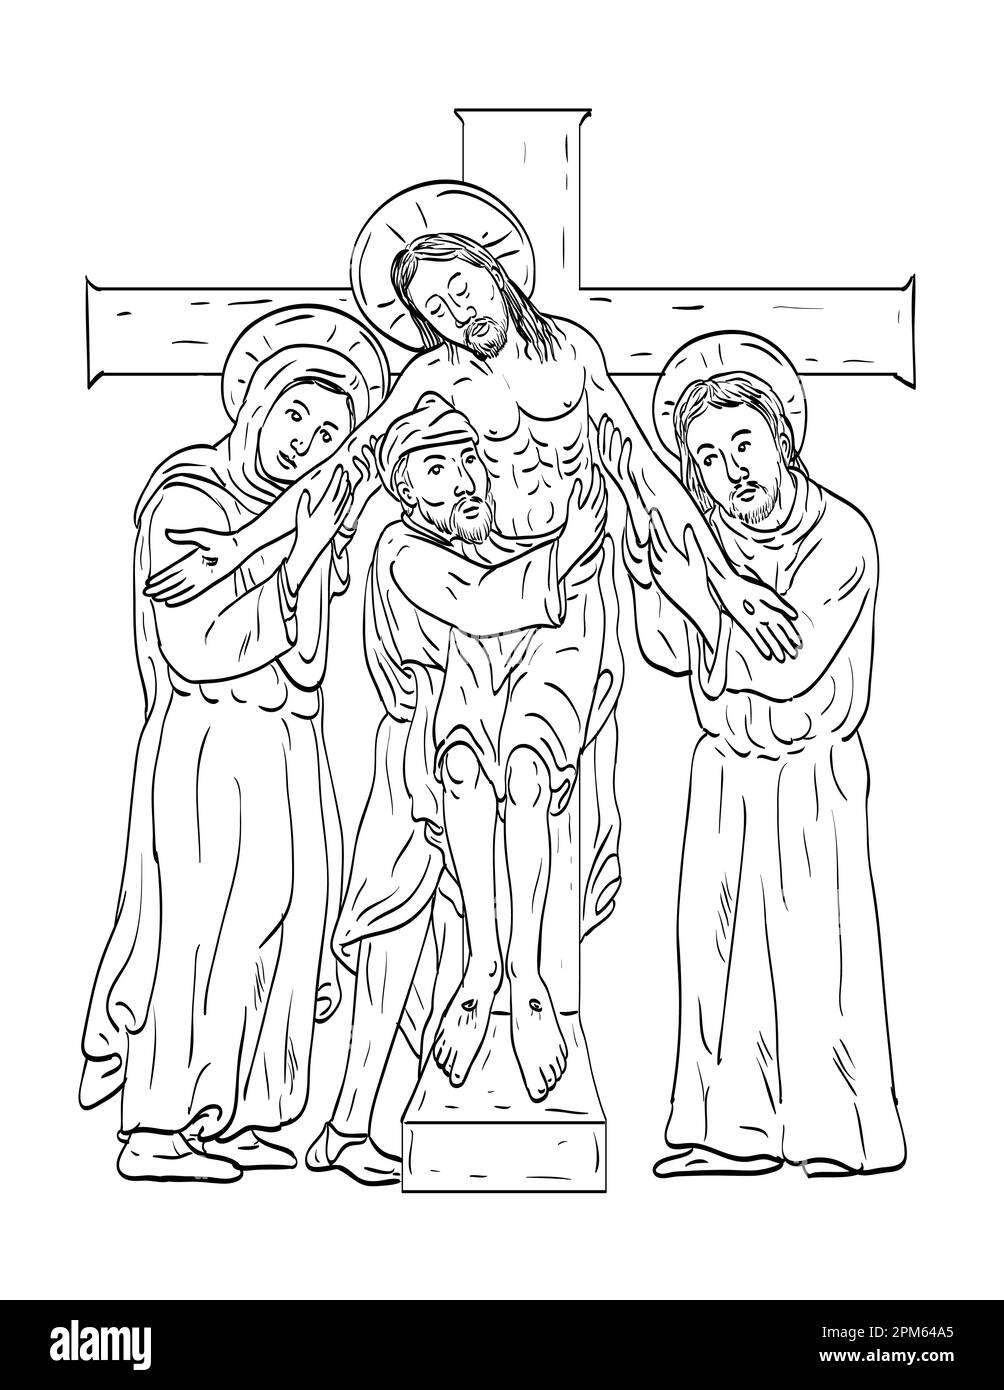 Cristo en la cruz dibujo blaco y negro fotografãas e imãgen de alta roluciãn